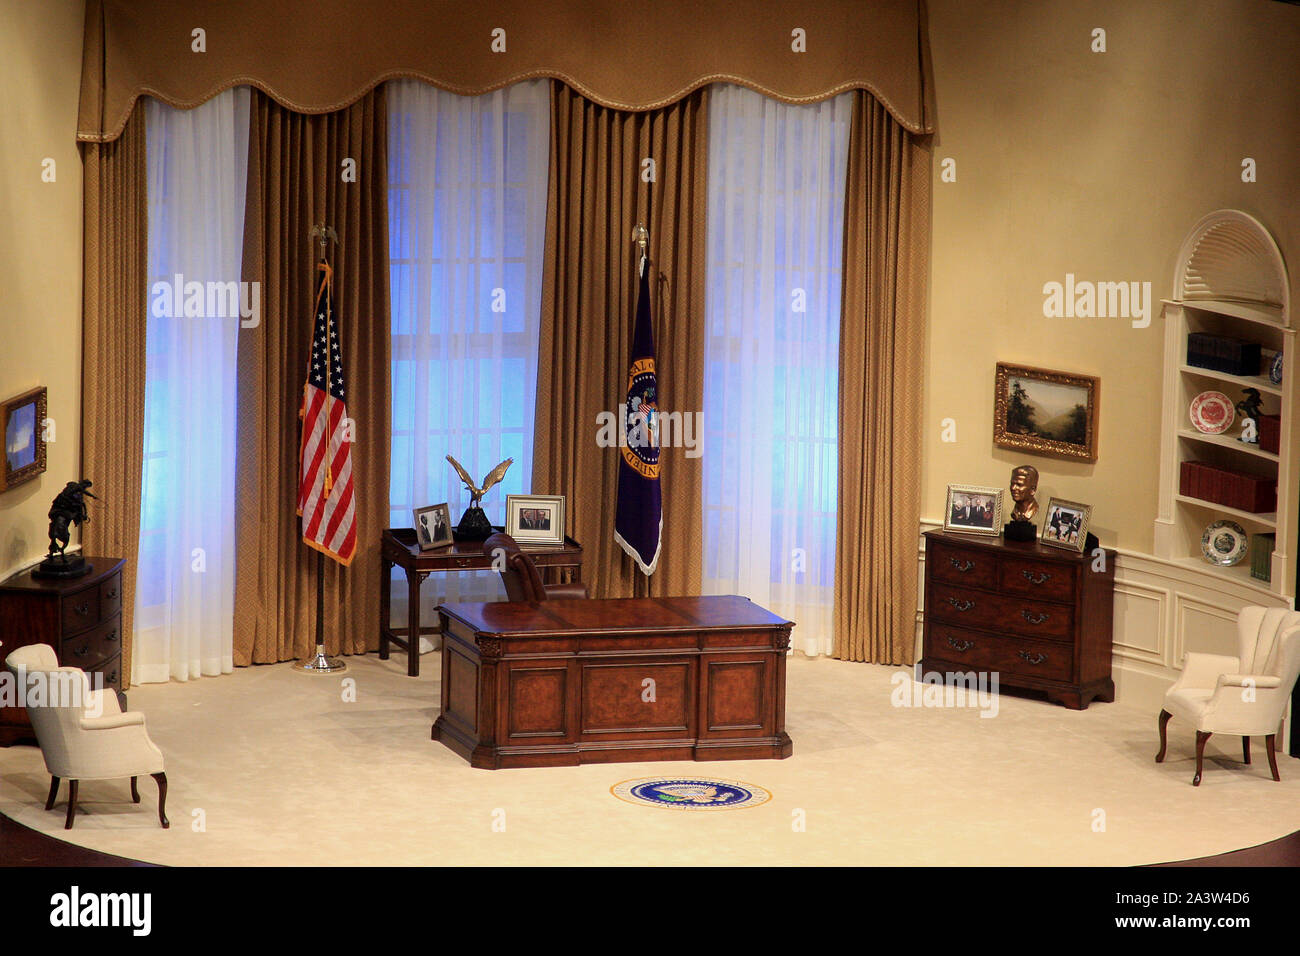 Réplica de la Oficina Oval, el espacio de trabajo de la oficina del presidente de los Estados Unidos en Washington DC, EE.UU. Foto de stock